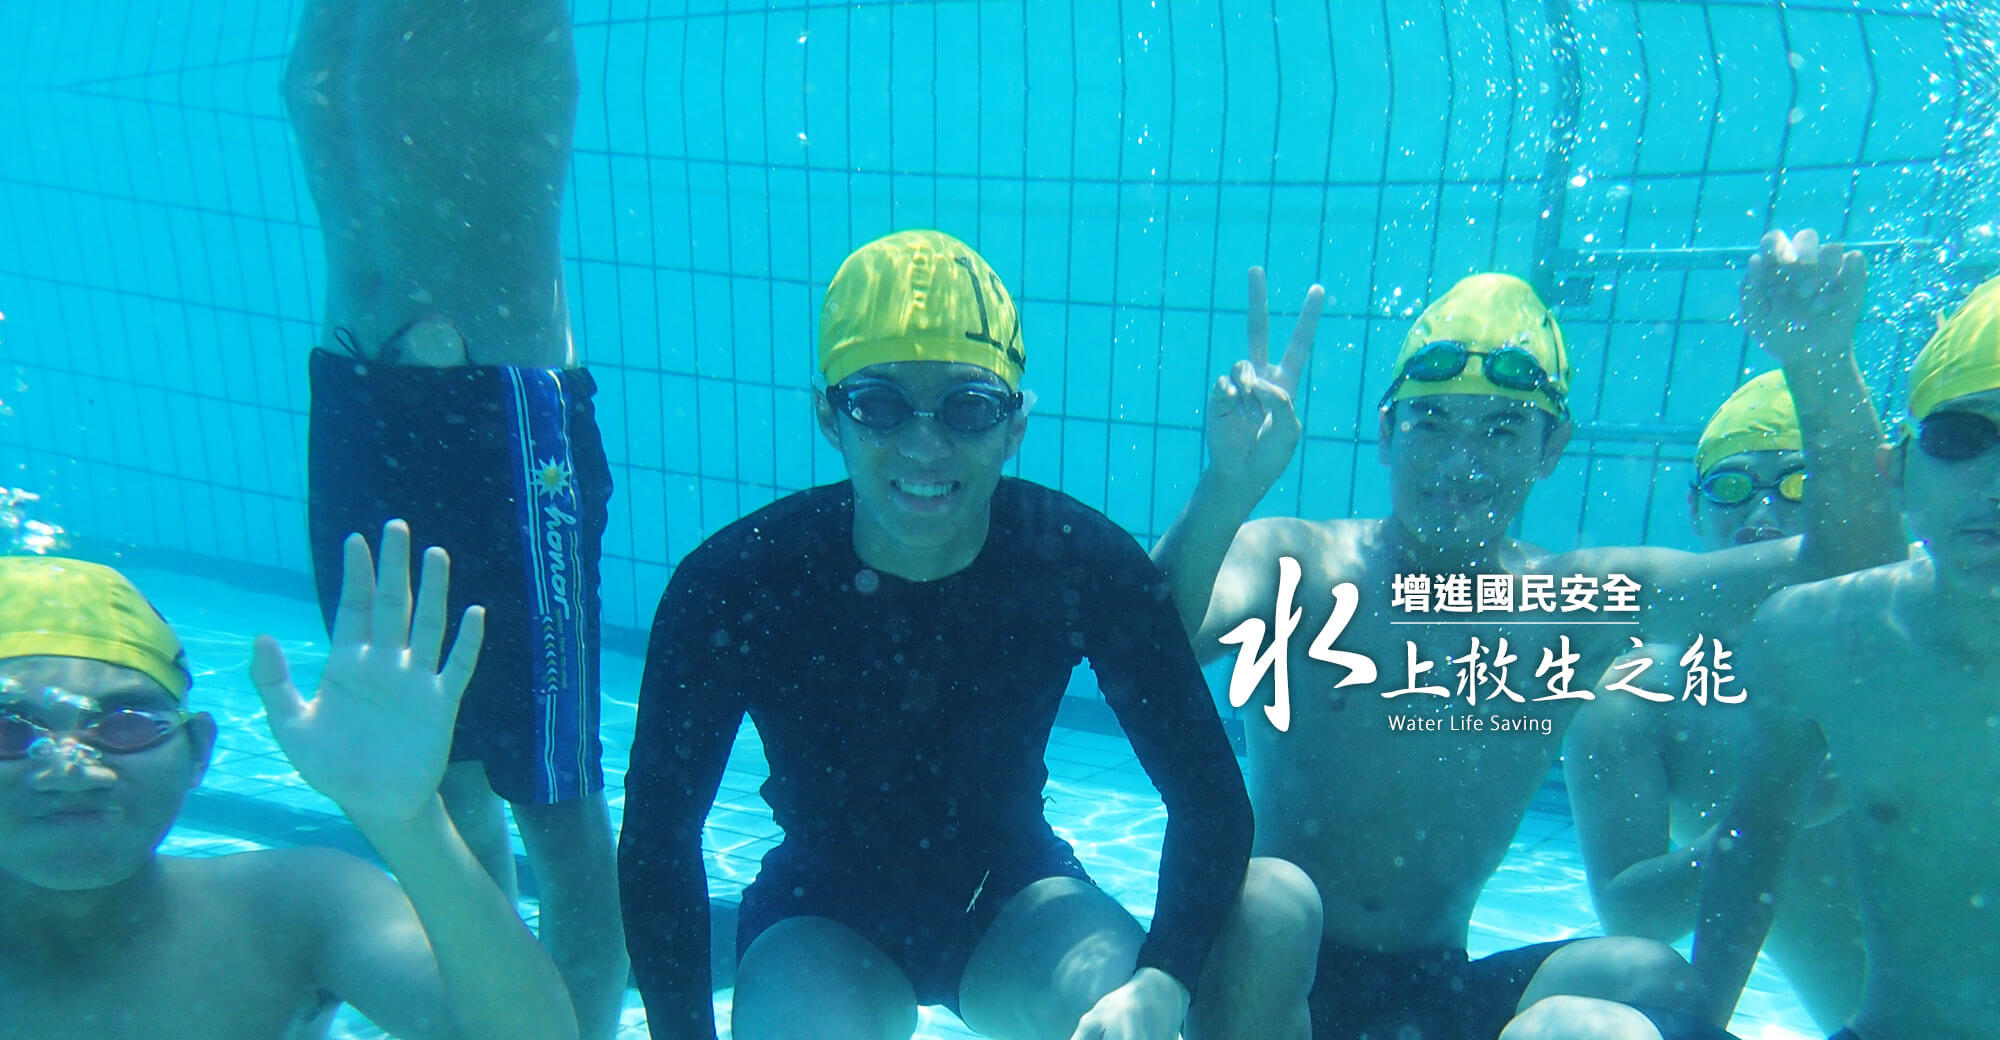 中華民國水上救生協會台南市分會形象廣告5